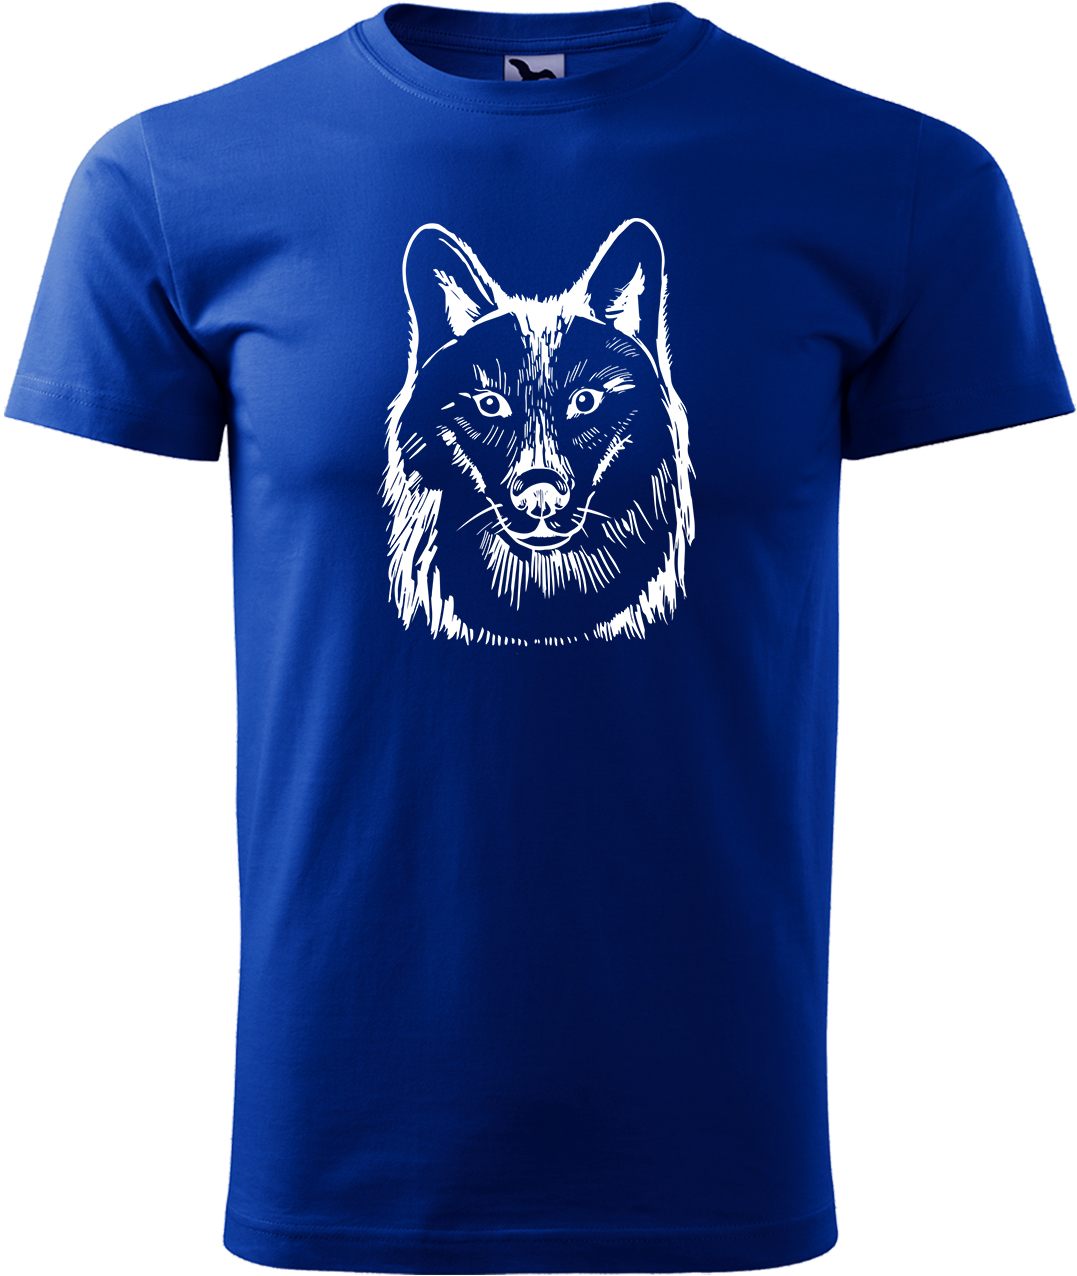 Pánské tričko s vlkem - Kresba vlka Velikost: L, Barva: Královská modrá (05), Střih: pánský